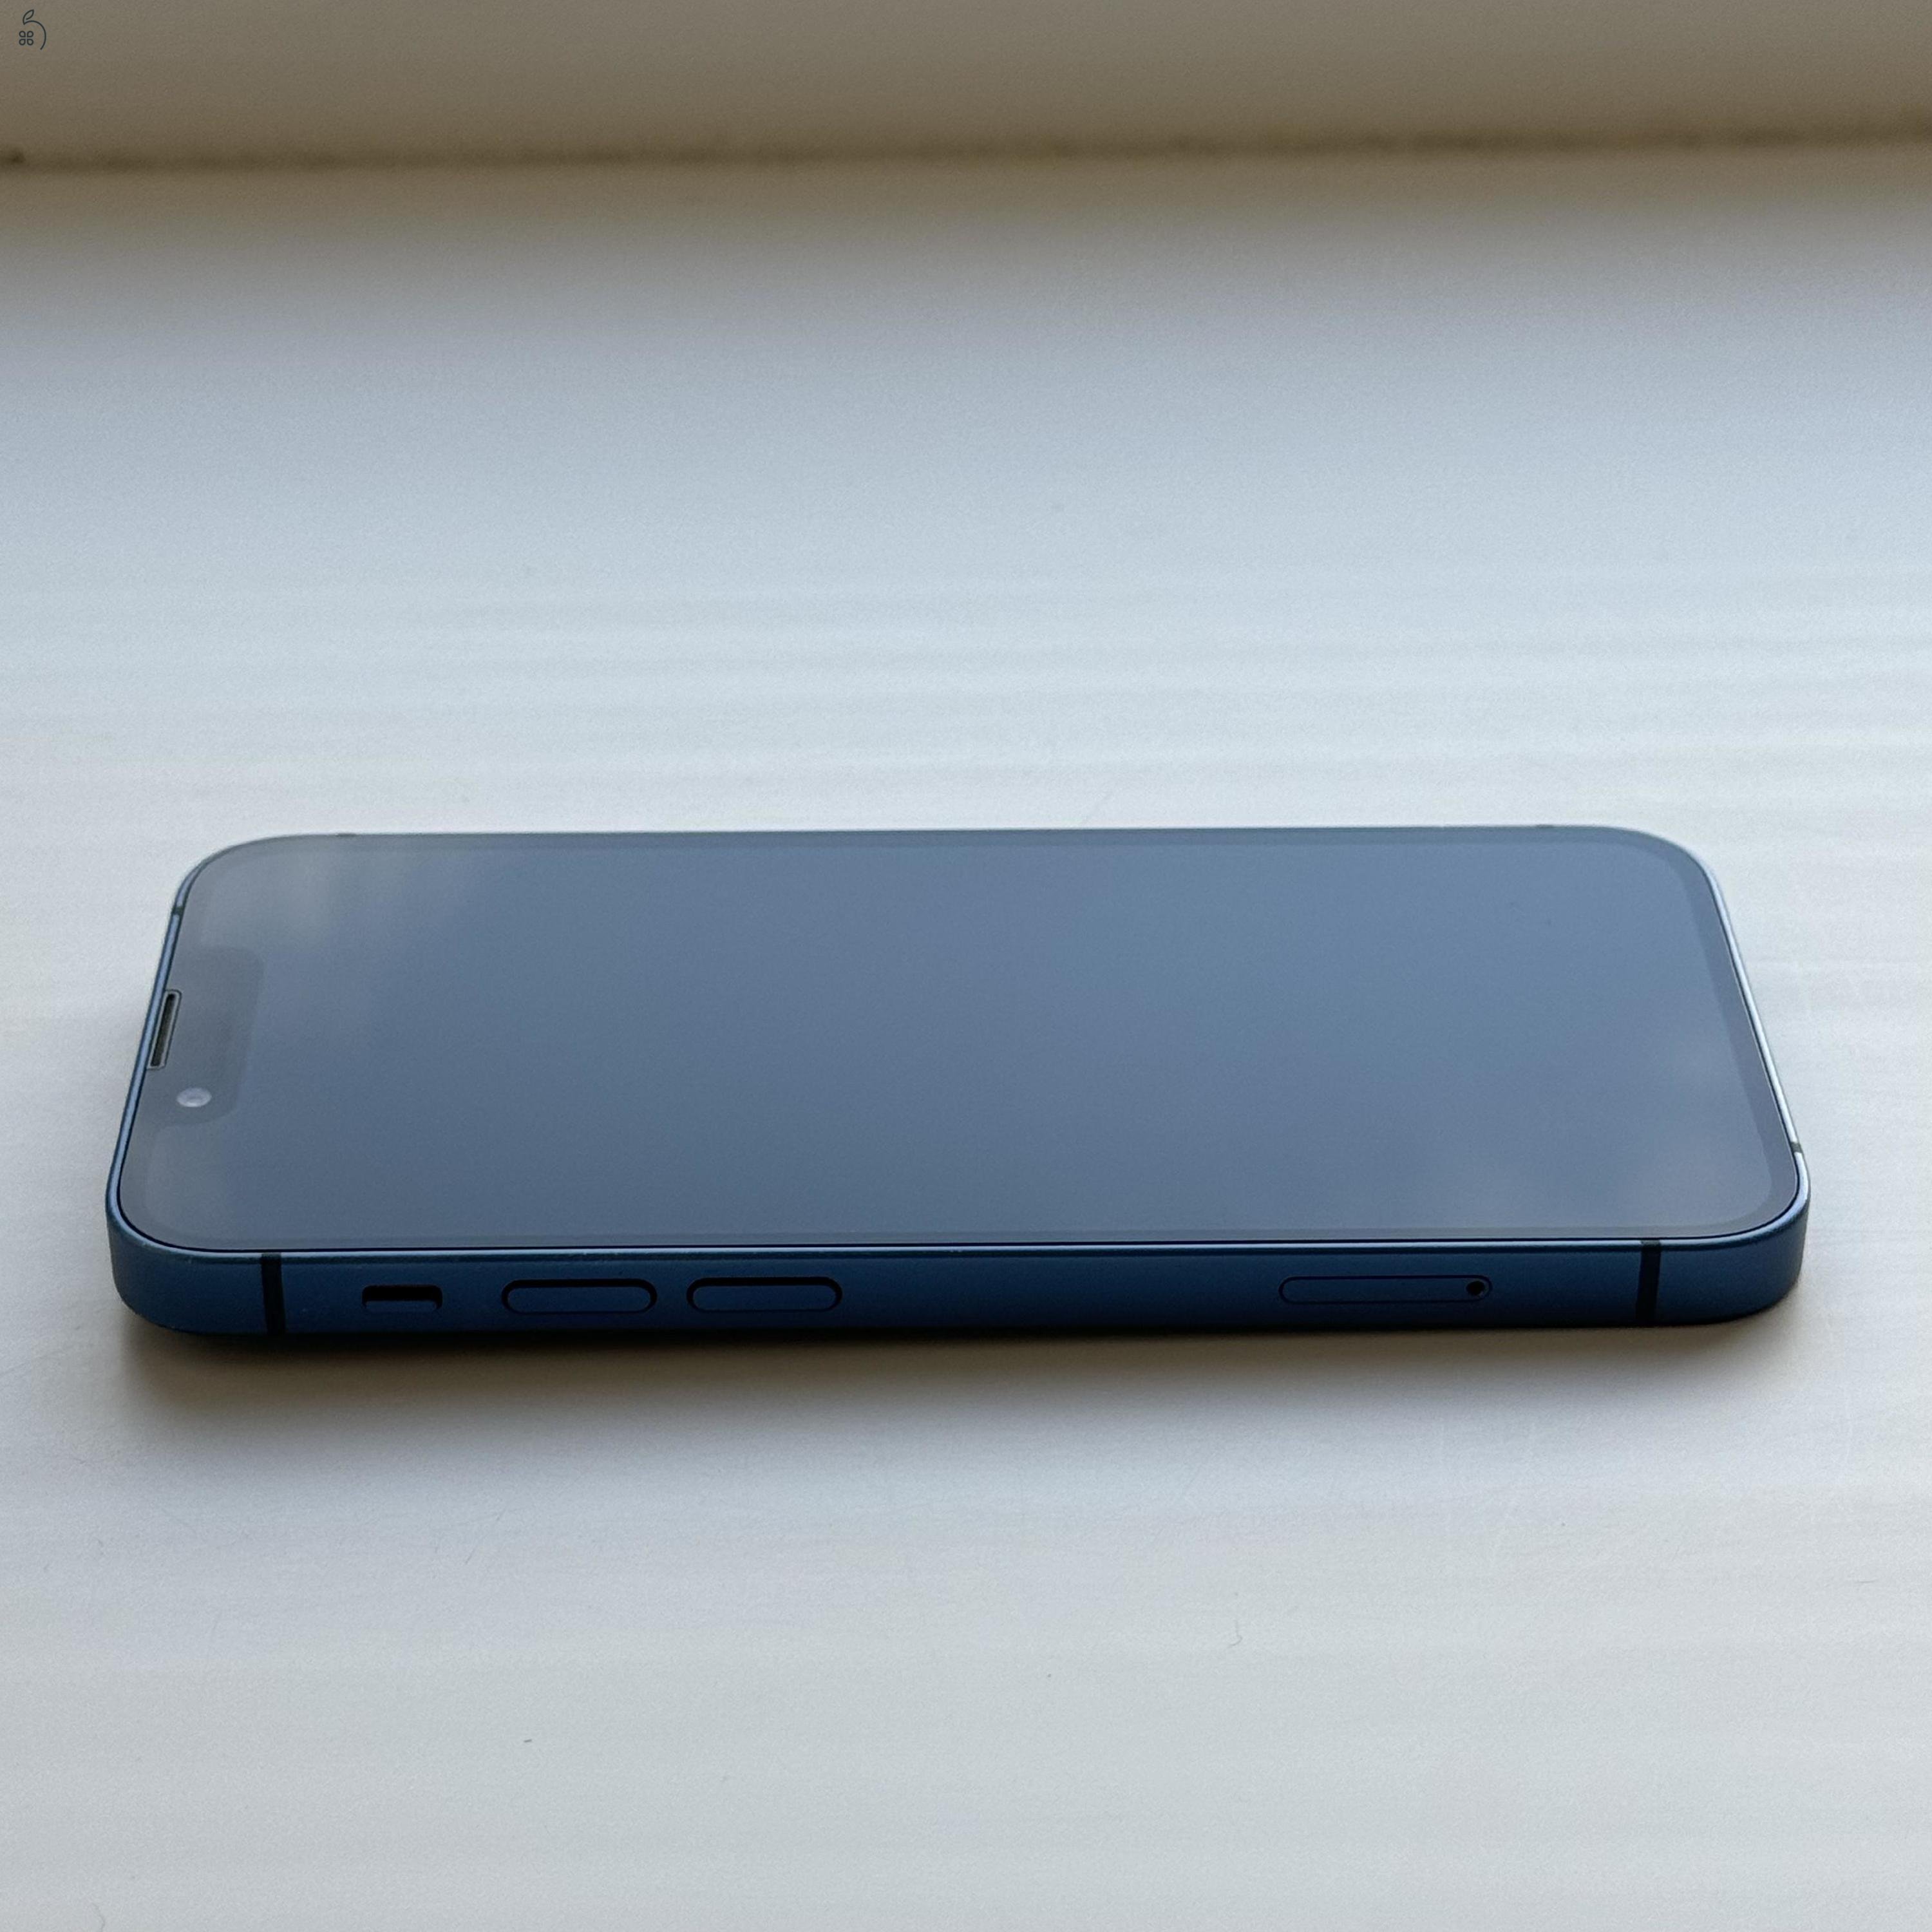 GYÖNYÖRŰ iPhone 13 mini 128GB Blue - Kártyfüggetlen, 1 ÉV GARANCIA, 88% Akkumulátor